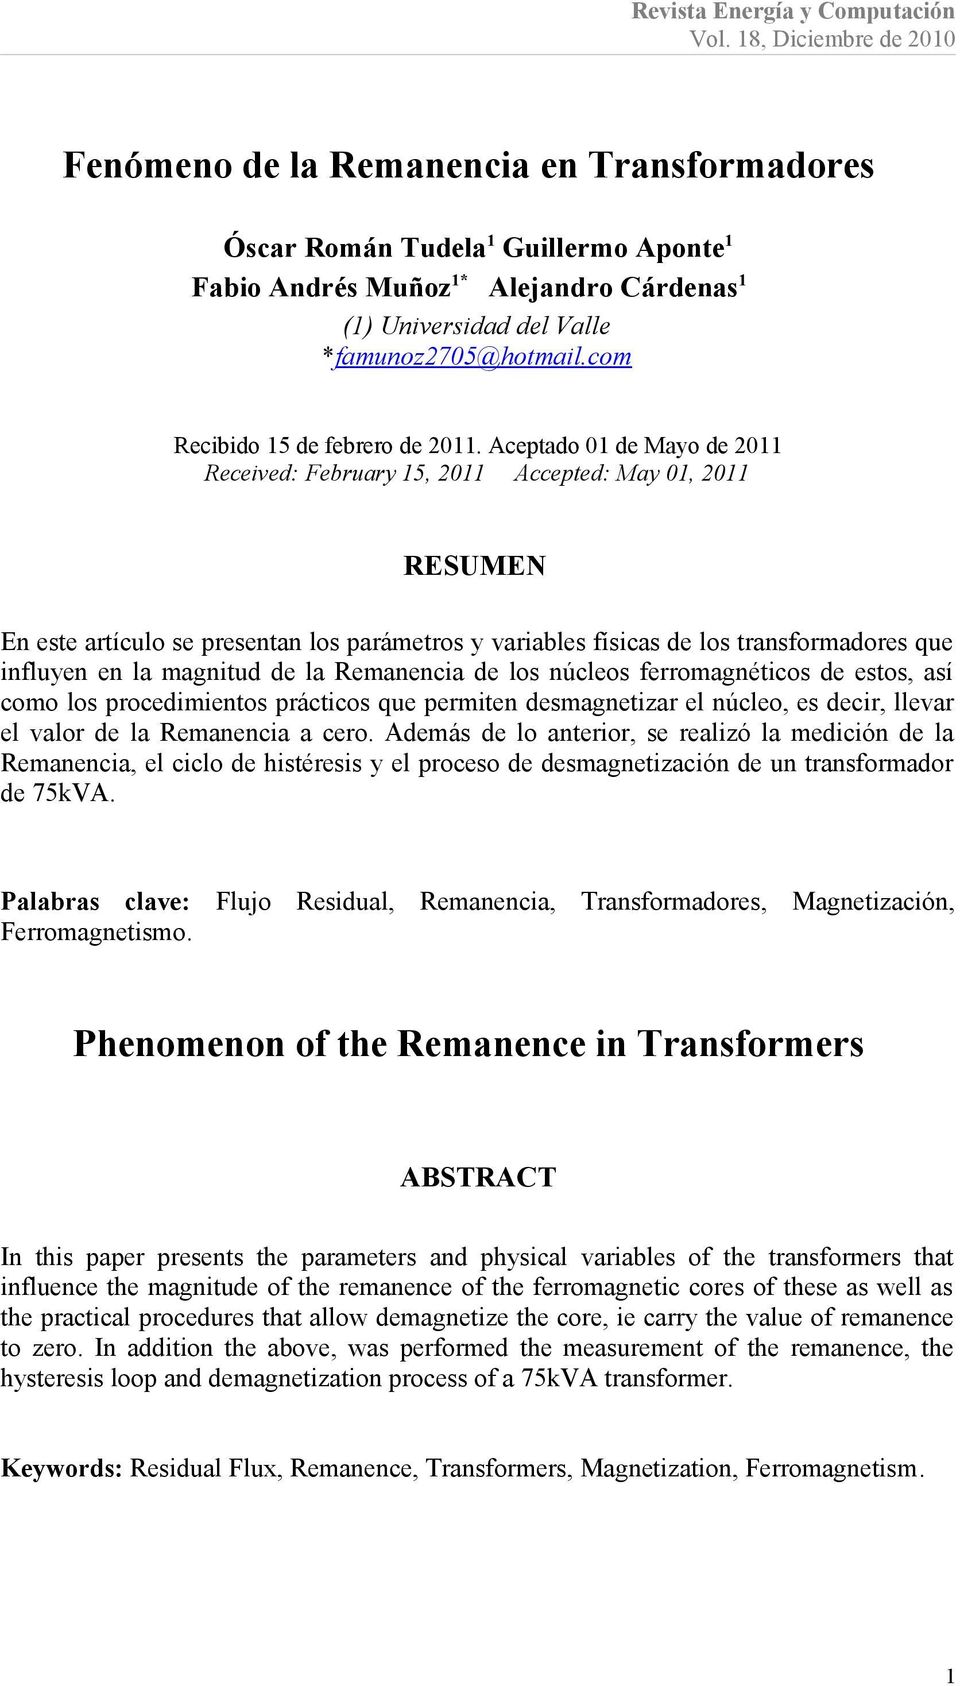 Aceptado 01 de Mayo de 2011 Received: February 15, 2011 Accepted: May 01, 2011 RESUMEN En este artículo se presentan los parámetros y variables físicas de los transformadores que influyen en la